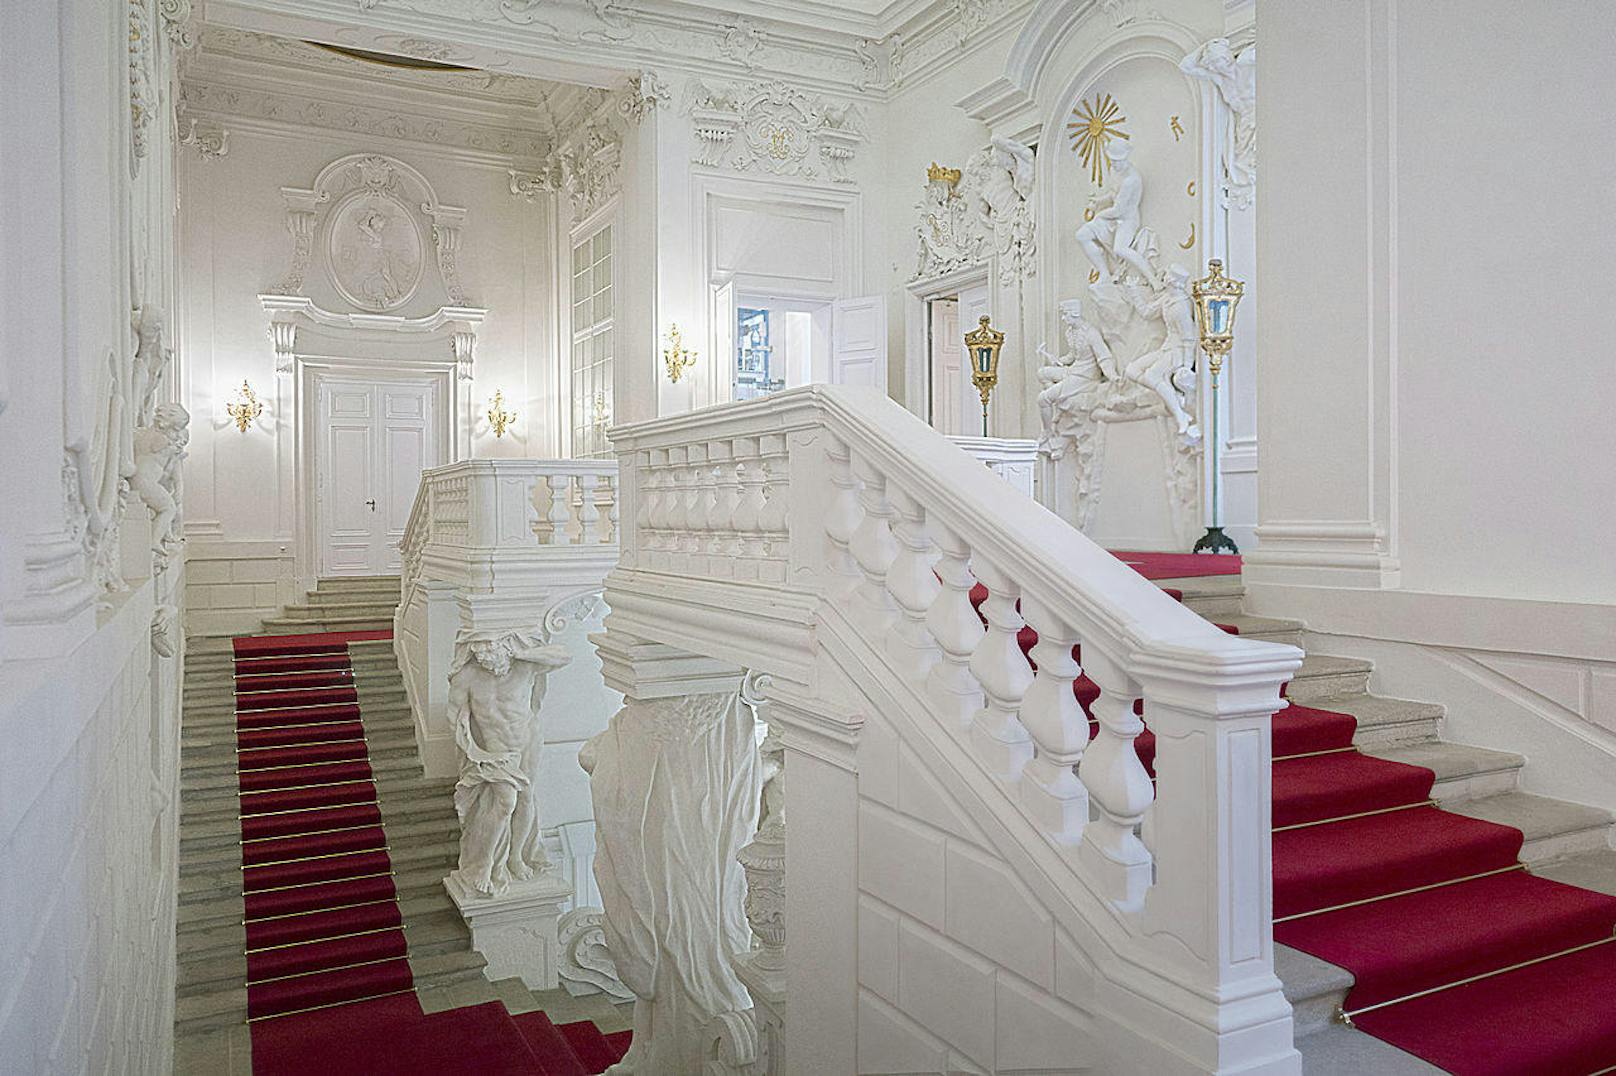 Eines dieser Gebäude ist das Winterpalais des Prinz Eugen von Savoyen, das man in der Himmelpfortgasse unter anderem über die Prunkstiege betreten kann. Hier ist unter anderem Zogelsdorfer Stein verarbeitet.